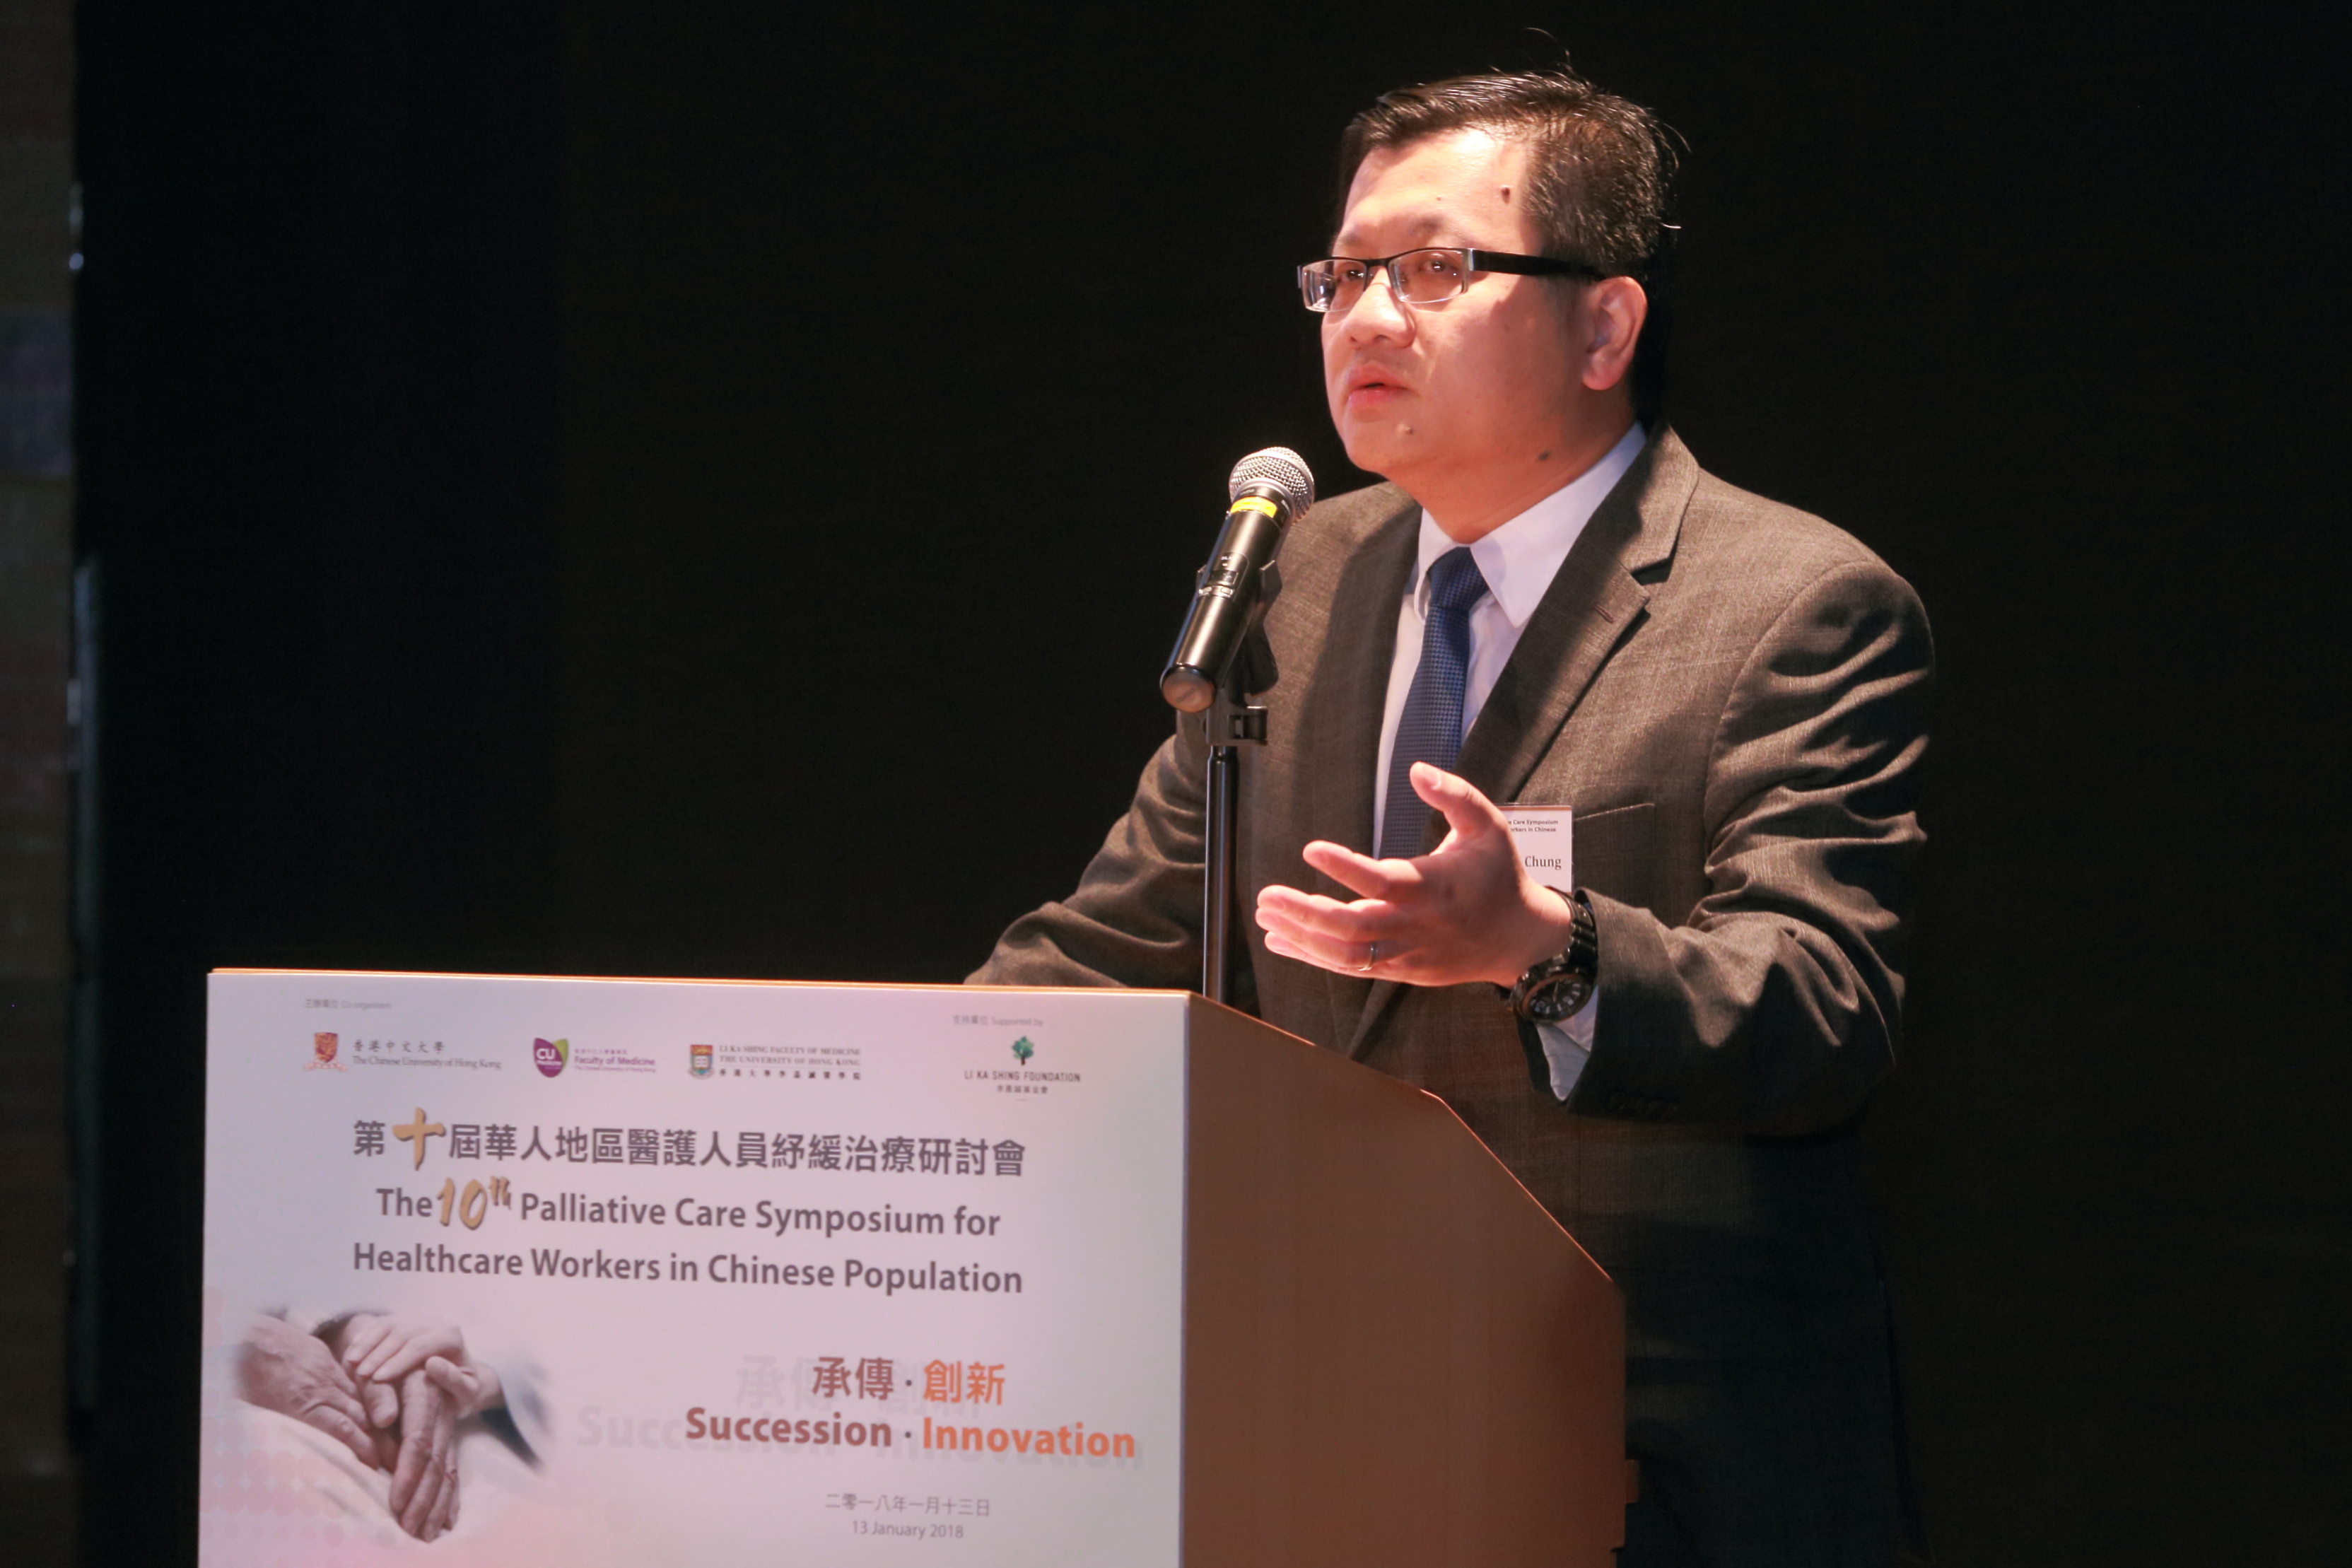  香港大學李嘉誠醫學院臨床腫瘤學系臨床助理教授林泰忠醫生擔任專題演講嘉賓，分享香港公營醫療系統的癌症紓緩治療服務於過去十年的發展，以及將來面對的挑戰。